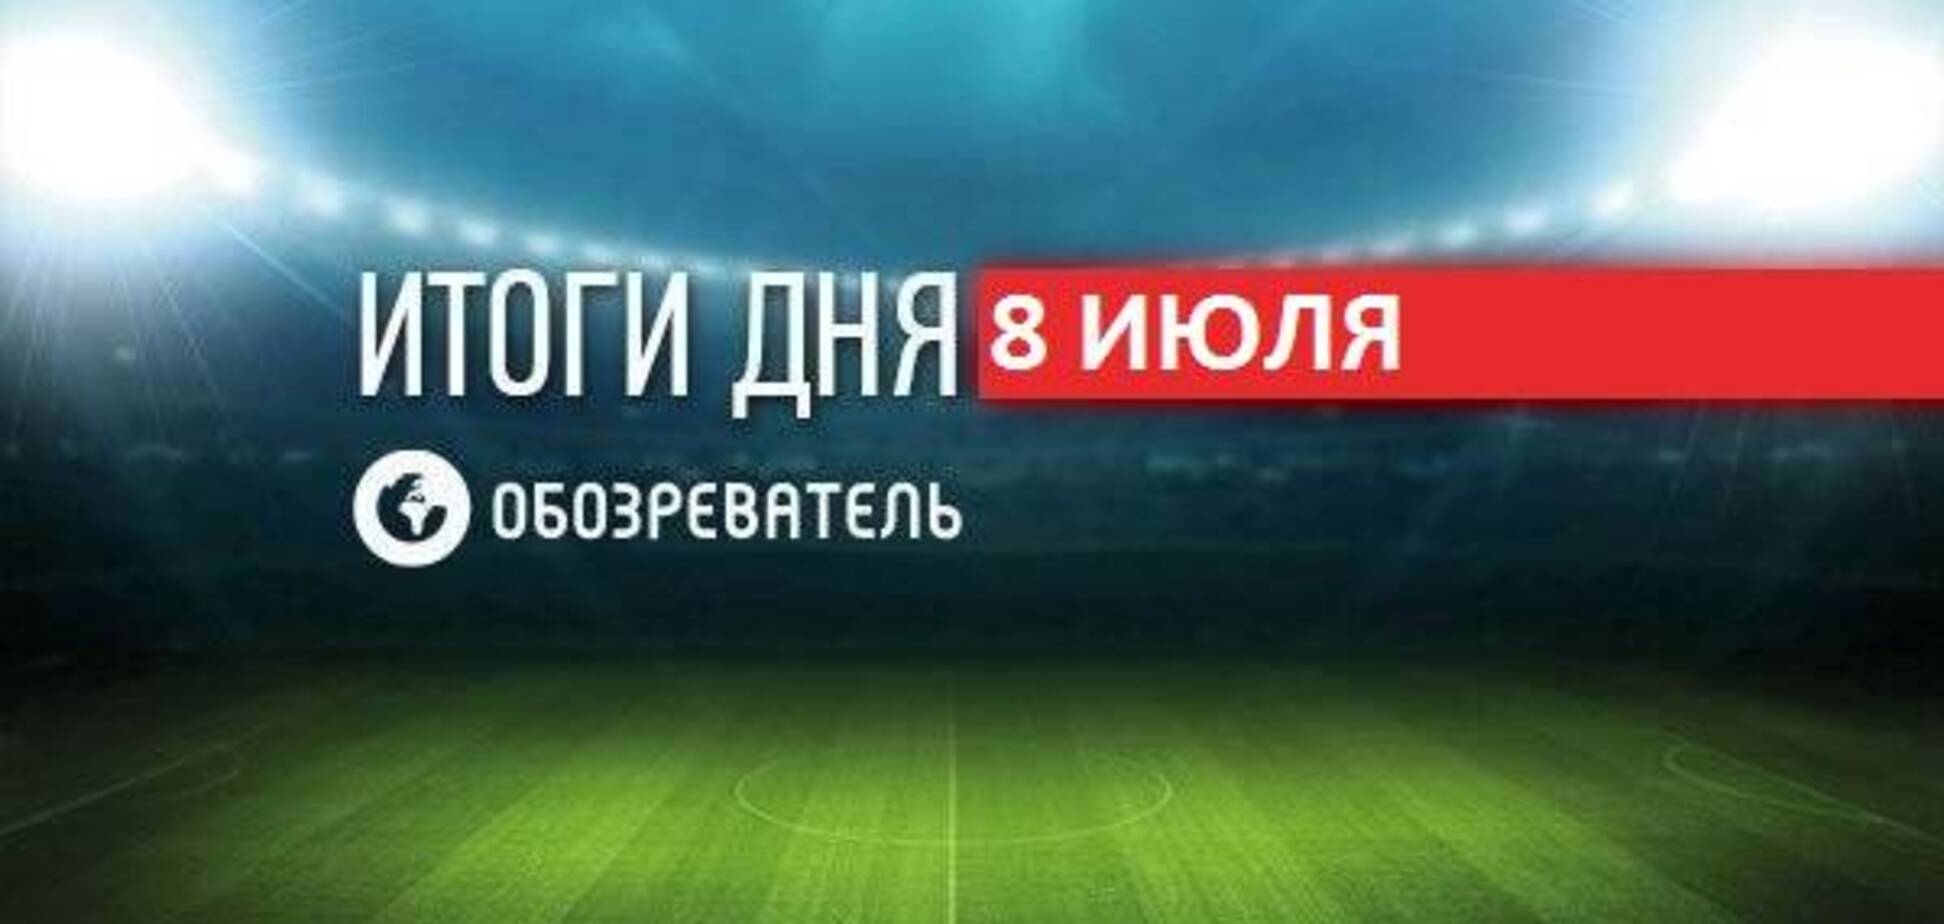 'Динамо' выиграло Кубок Украины: спортивные итоги 8 июля